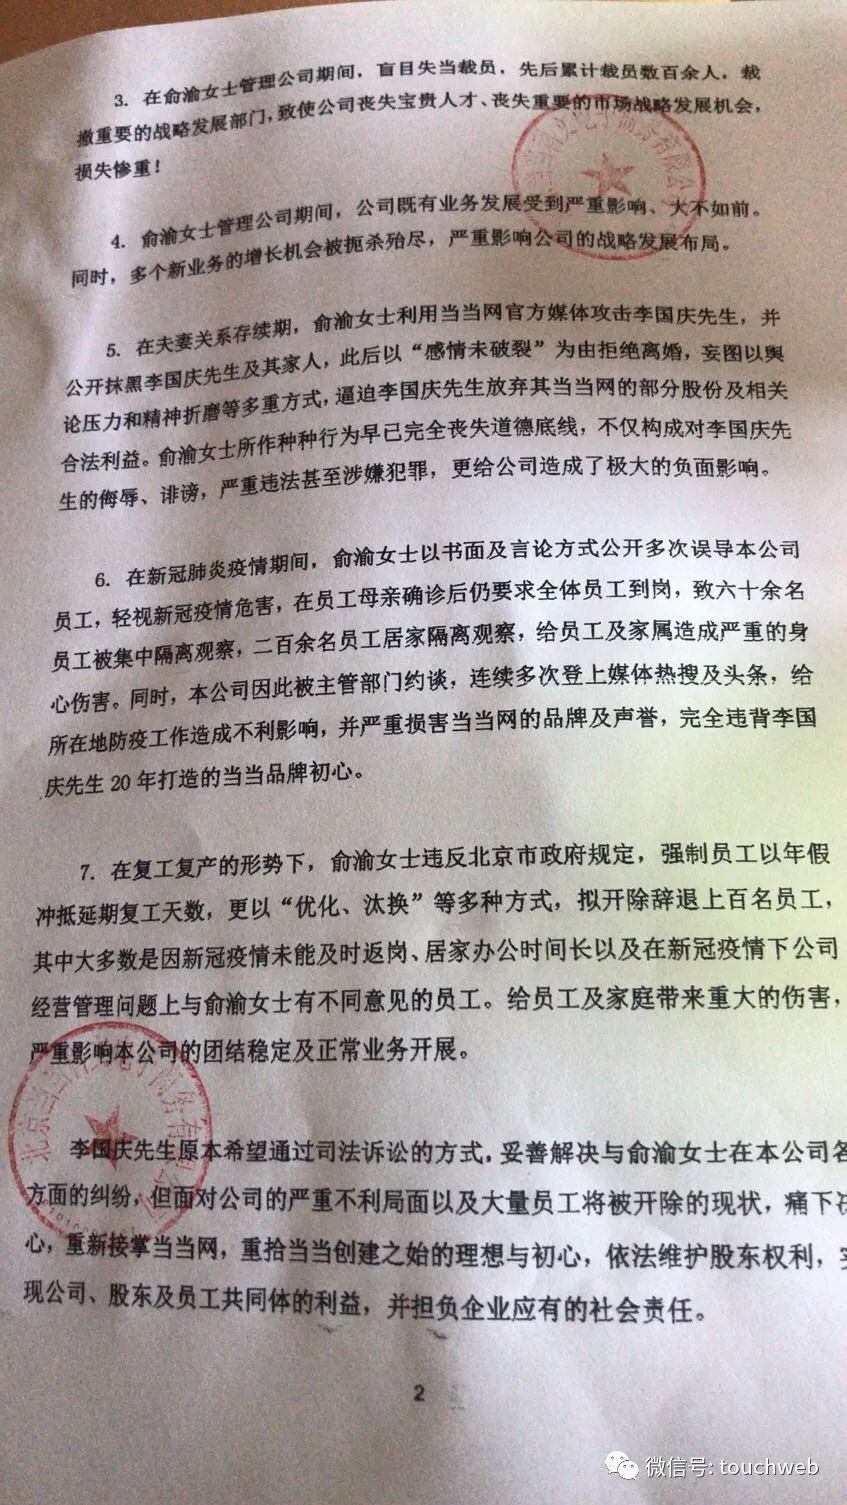 李國慶攜早晚讀書全面接管當當 公開「罷免」俞渝 職場 第5張